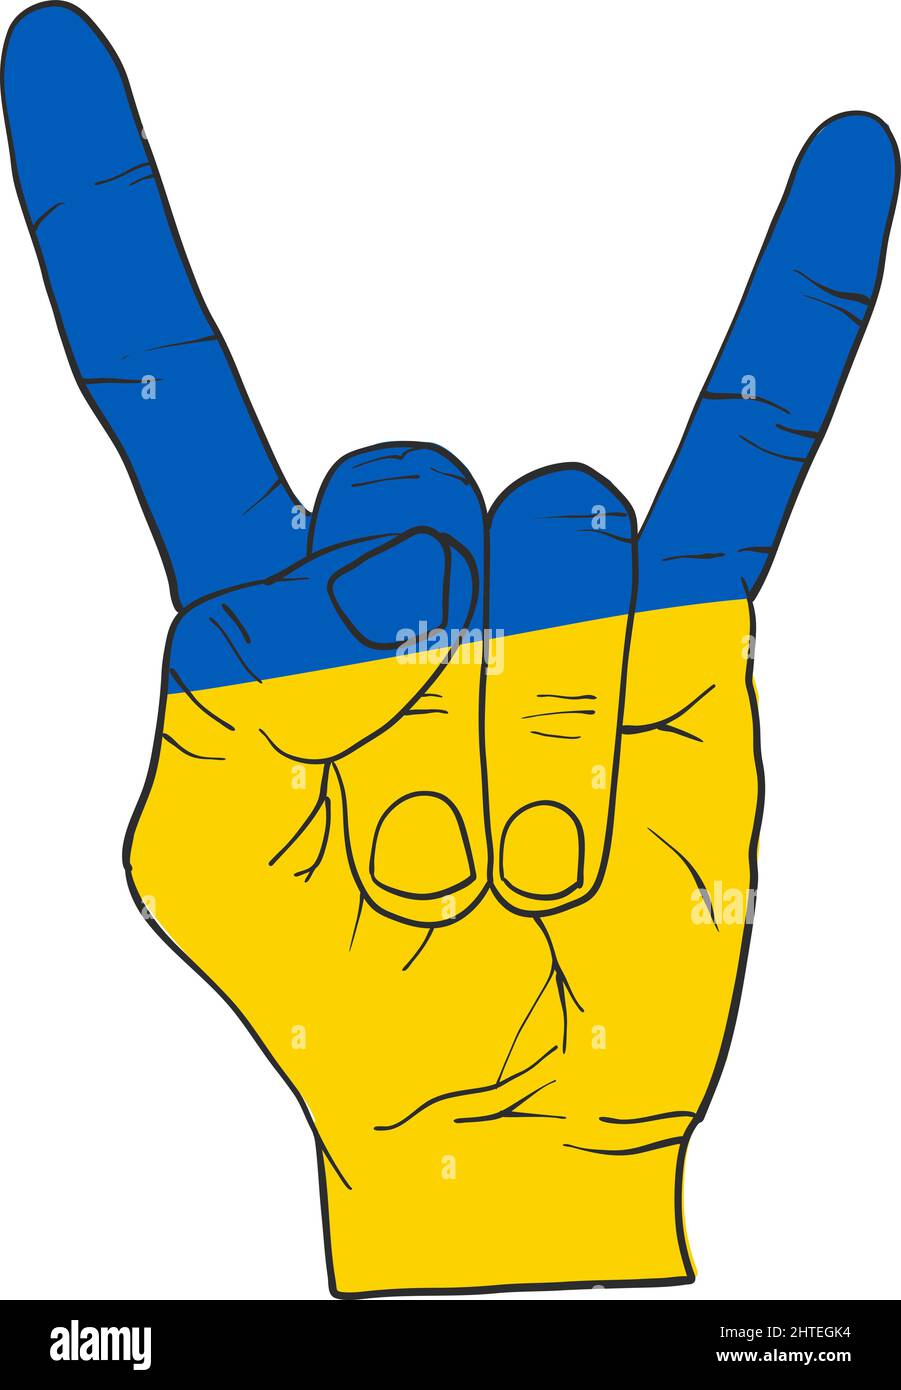 Freiheits-Handzeichen für das ukrainische Volk. Symbol für die Unterstützung der Menschen in Kiew und der Ukraine. Gemeinsam stark bleiben. Patriotisches Symbol, Symbol.-Ergänzungskategorien Stock Vektor